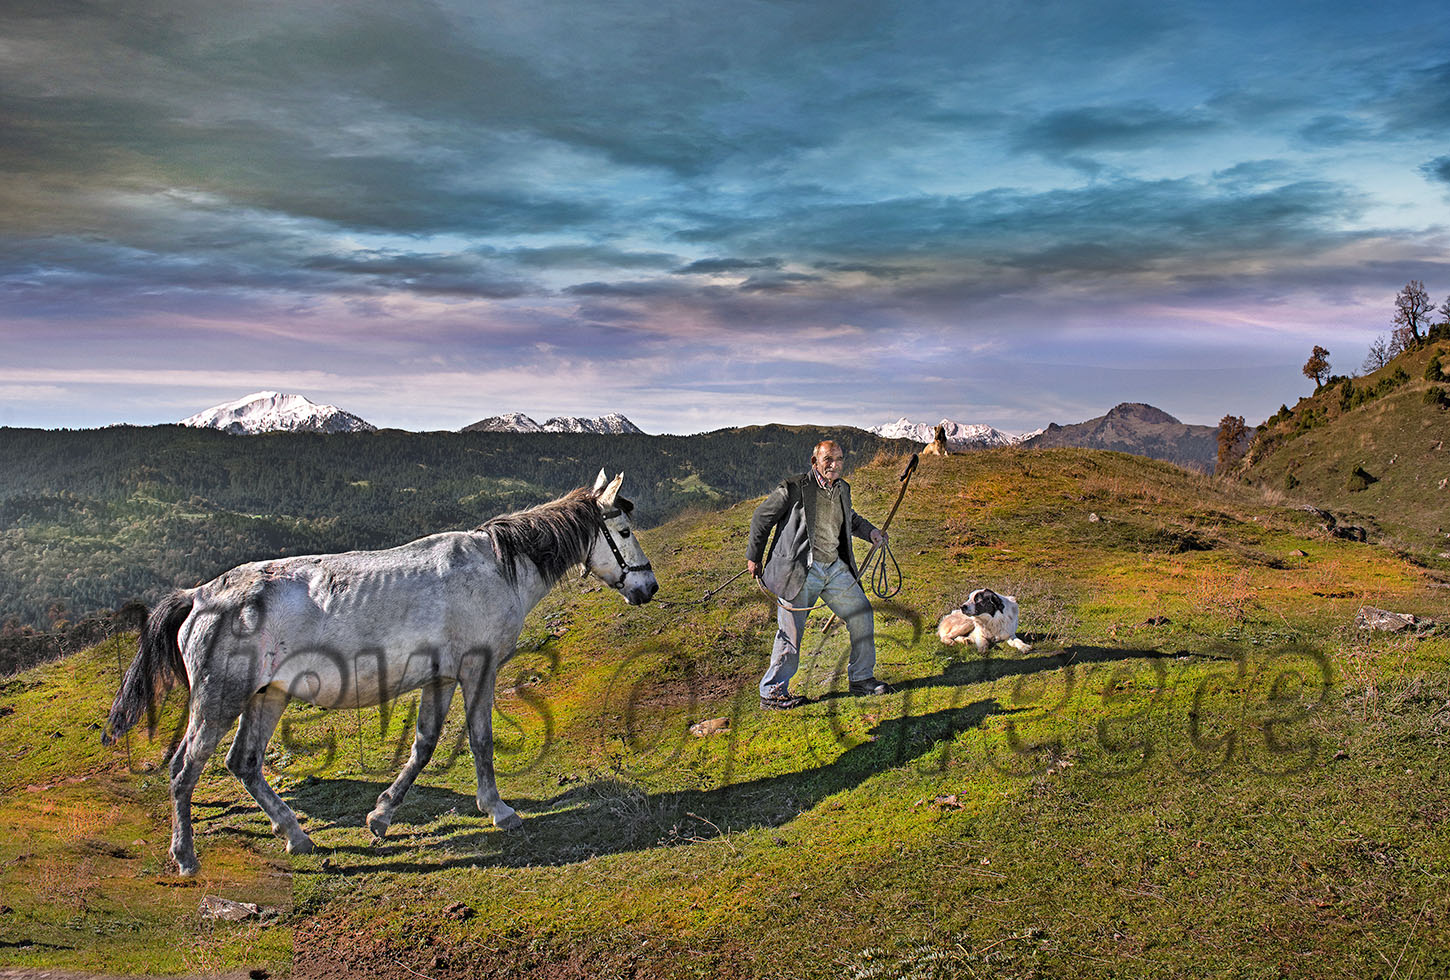 Νομός ΓΡΕΒΕΝΩΝ, Αλατόπετρα, Μεσολούρι, Δοτσικό. Ο κυρ Χρίστος με το άλογο του στα ορεινά λημέρια του